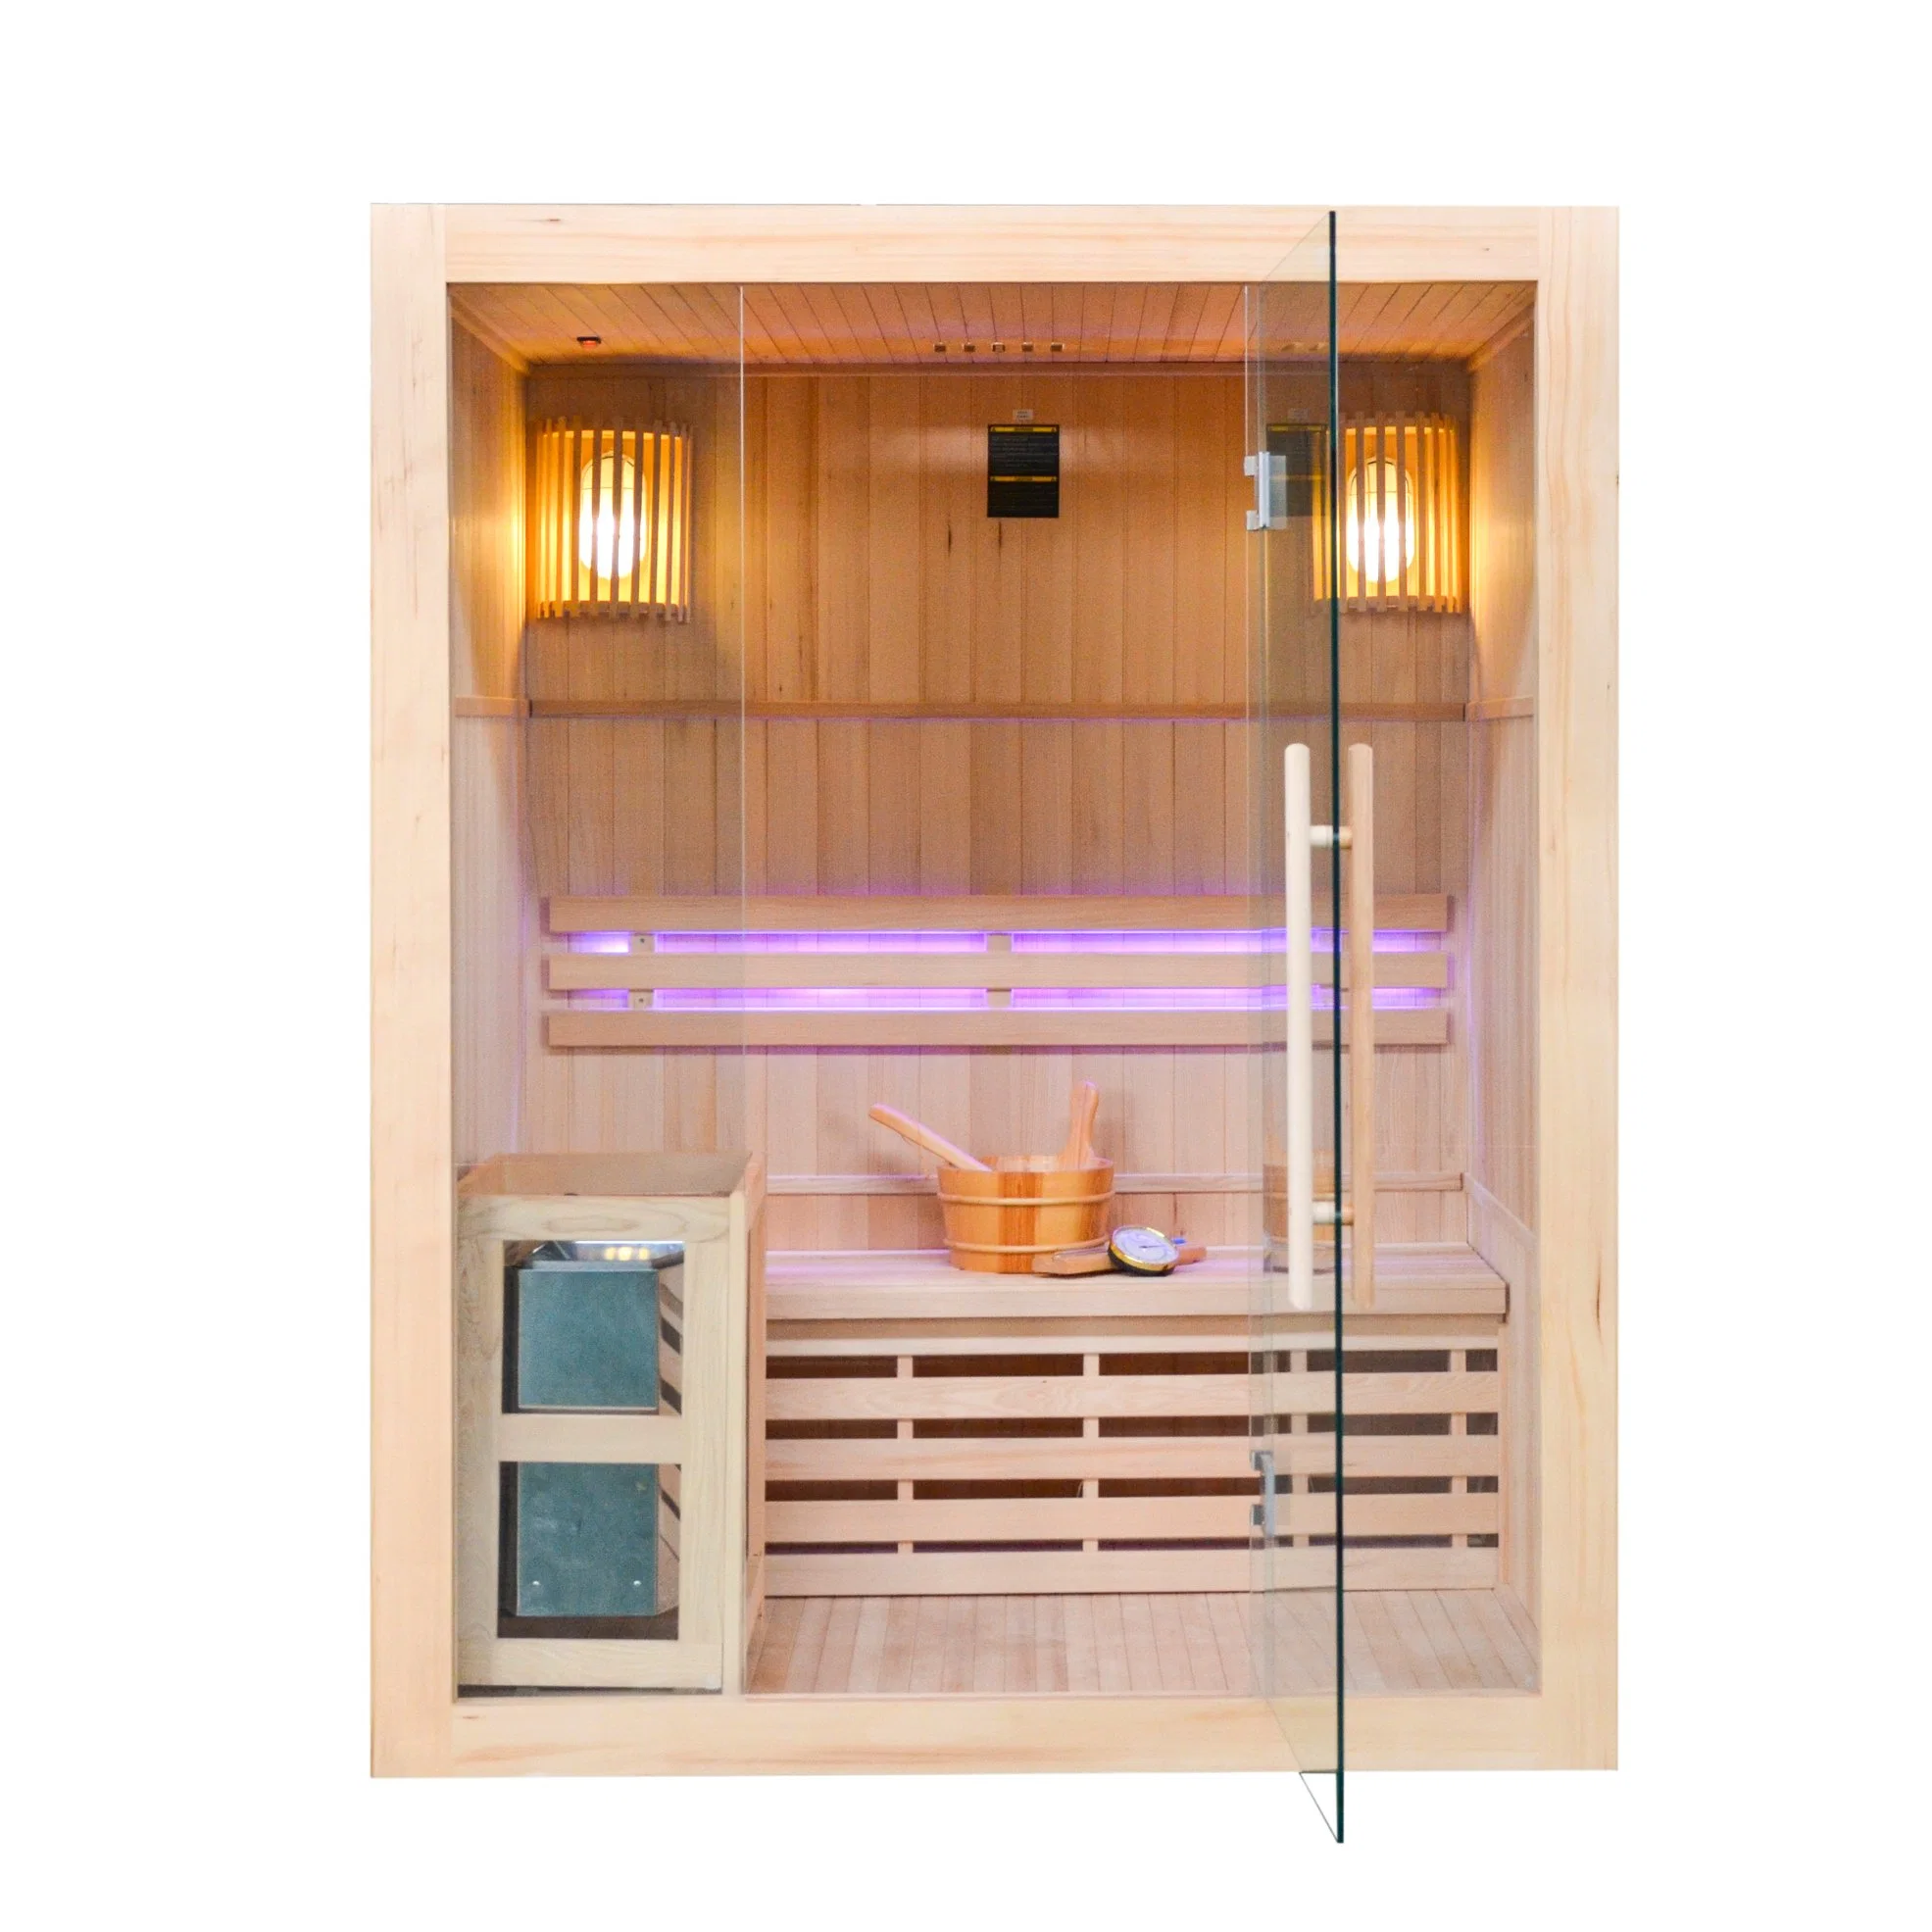 A Terapia de luxo Sala de Sauna a vapor o melhor preço por grosso Sauna Finlandesa de Saúde